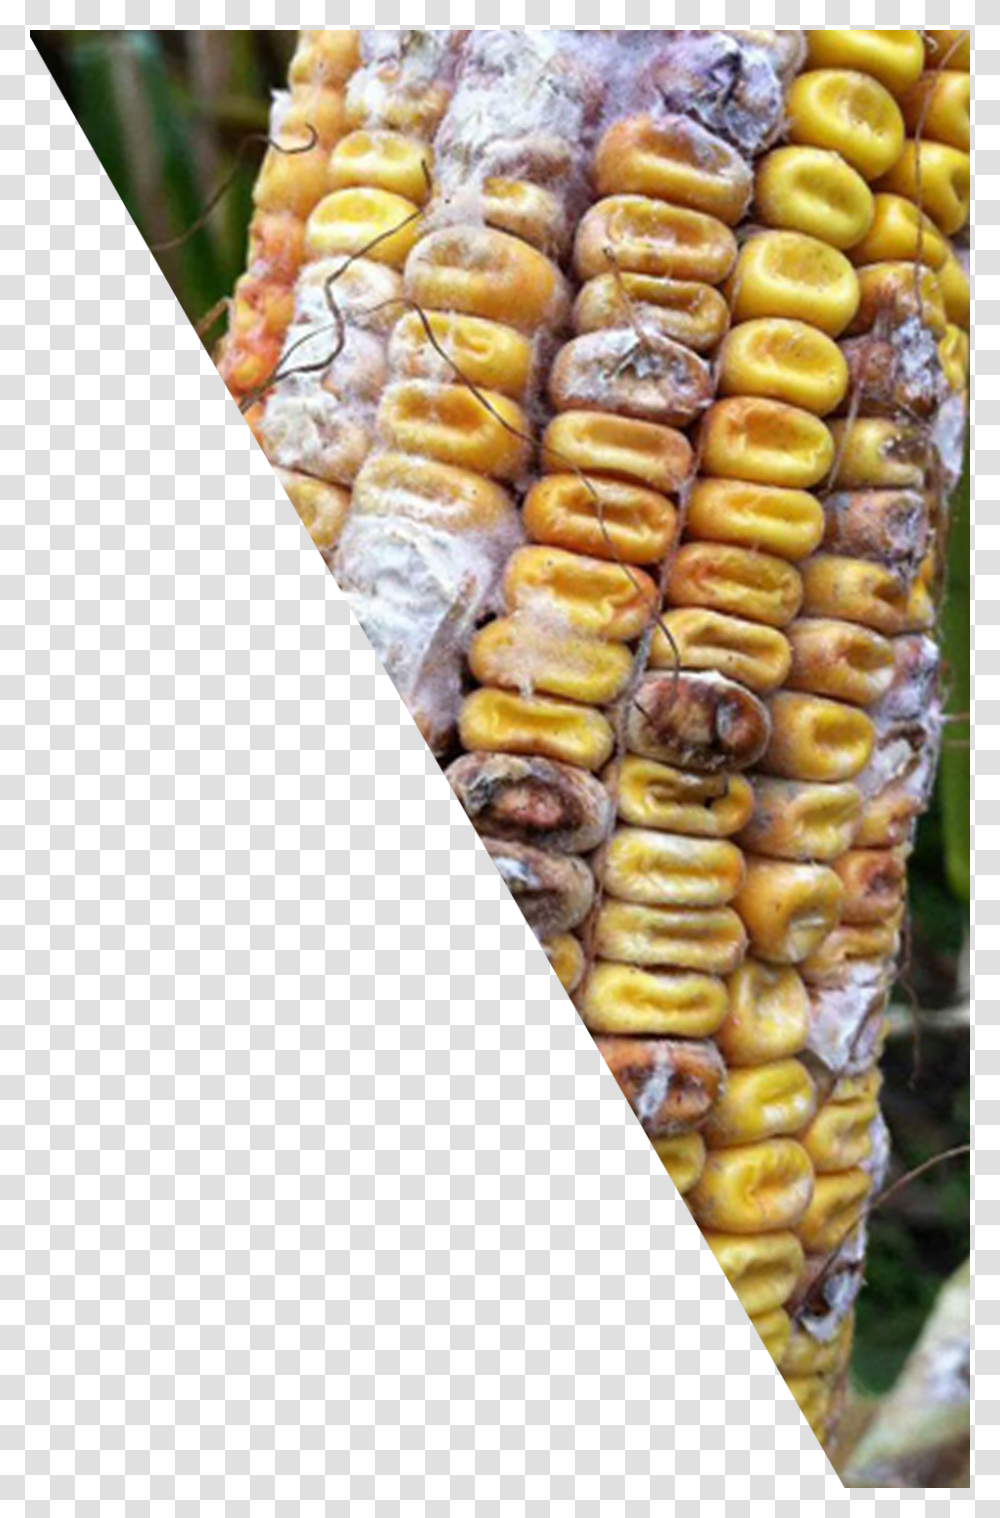 Corn Cob Corn Kernels Download Corn Kernels, Plant, Food, Bread, Vegetable Transparent Png